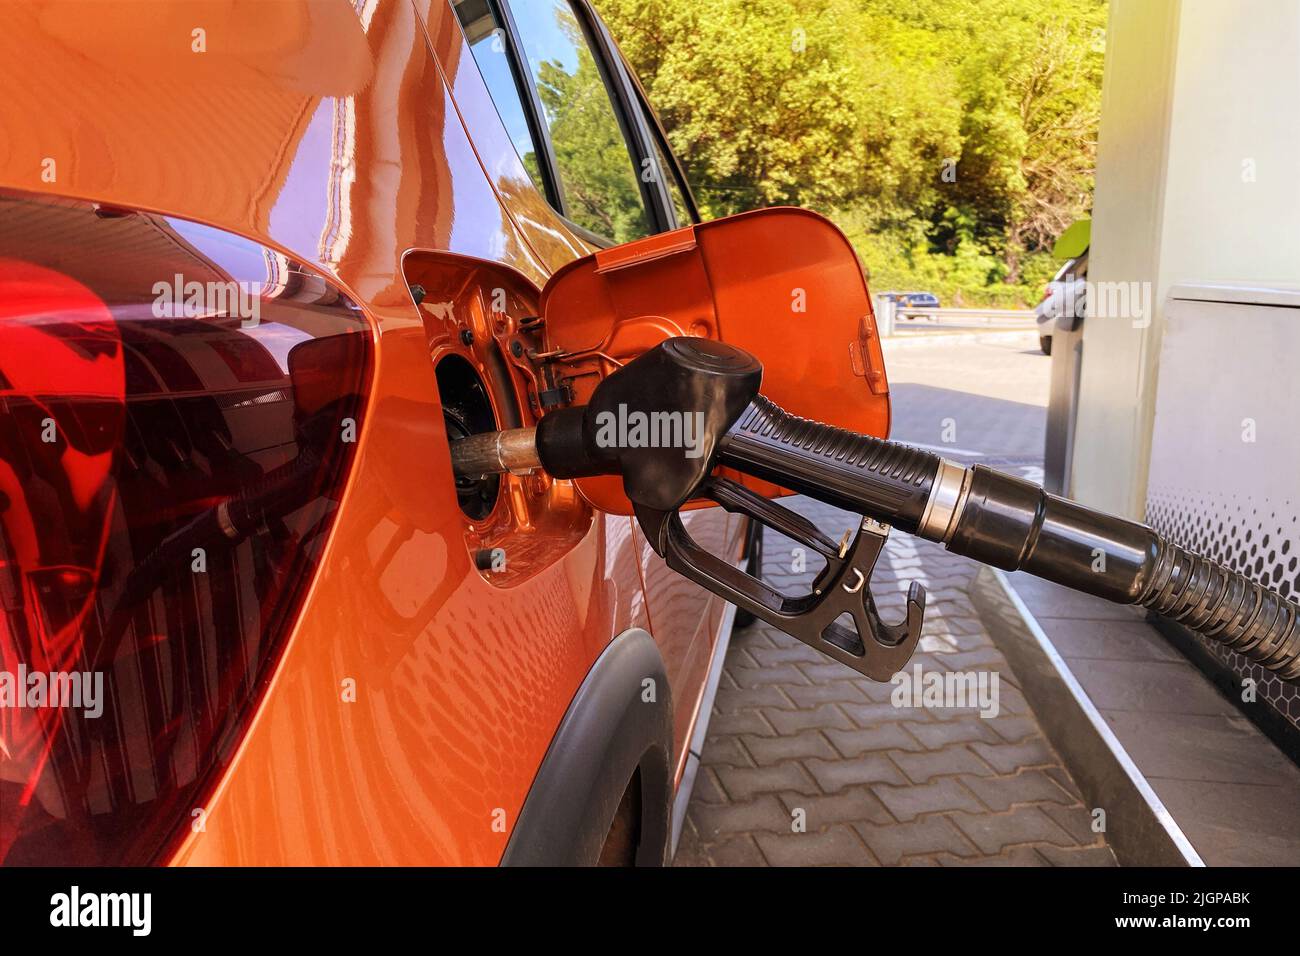 Llene el coche con combustible en la gasolinera. Bombear gasolina en un coche naranja en una gasolinera. Primer plano. Foto de stock